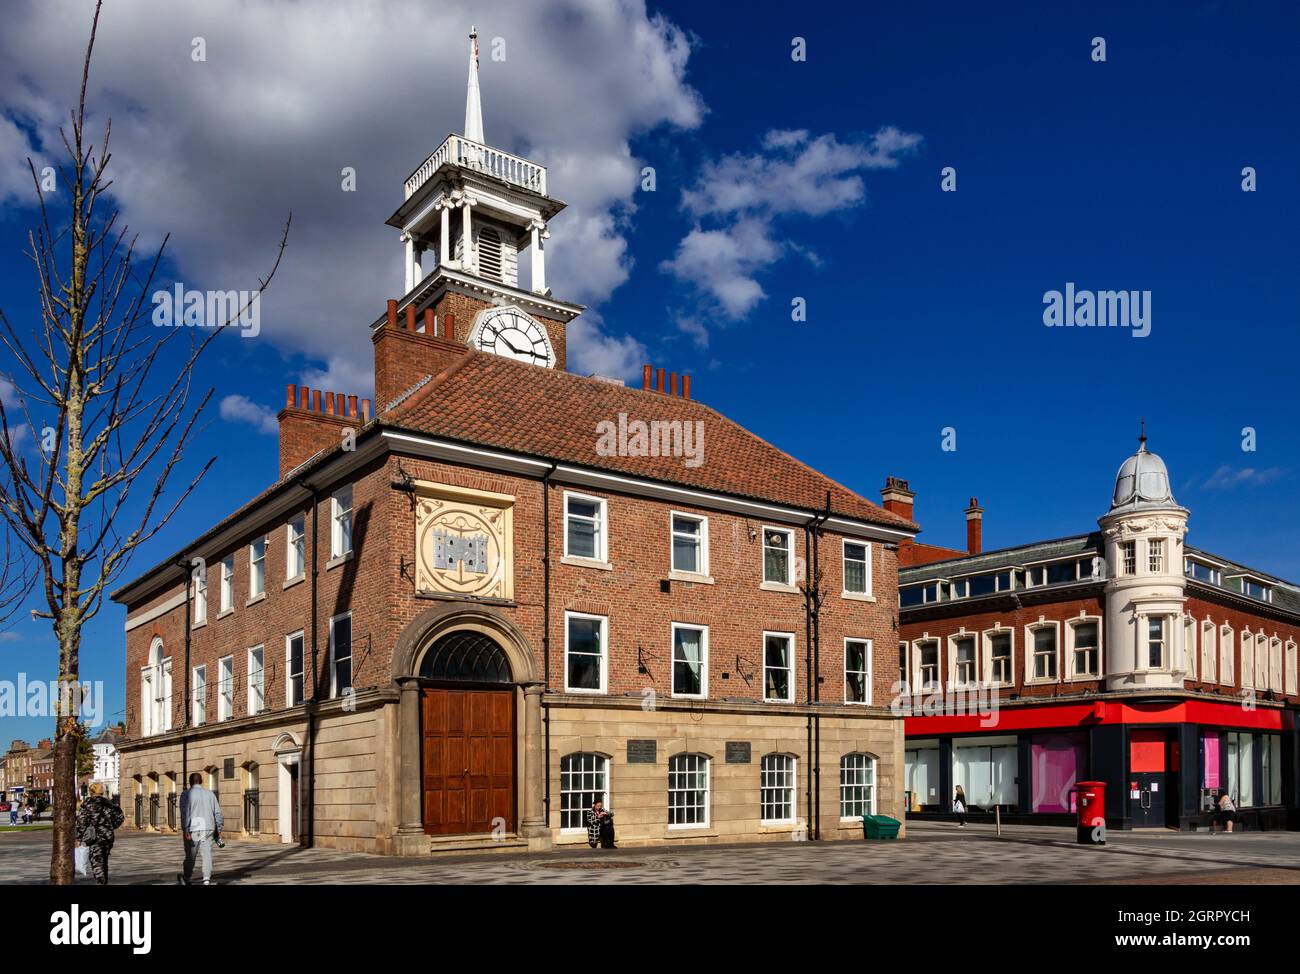 Stockton-on-Tees, eine große Marktstadt im Bezirk Stockton-on-Tees, Grafschaft Durham, England, liegt am Nordufer des River Tees. Stockfoto